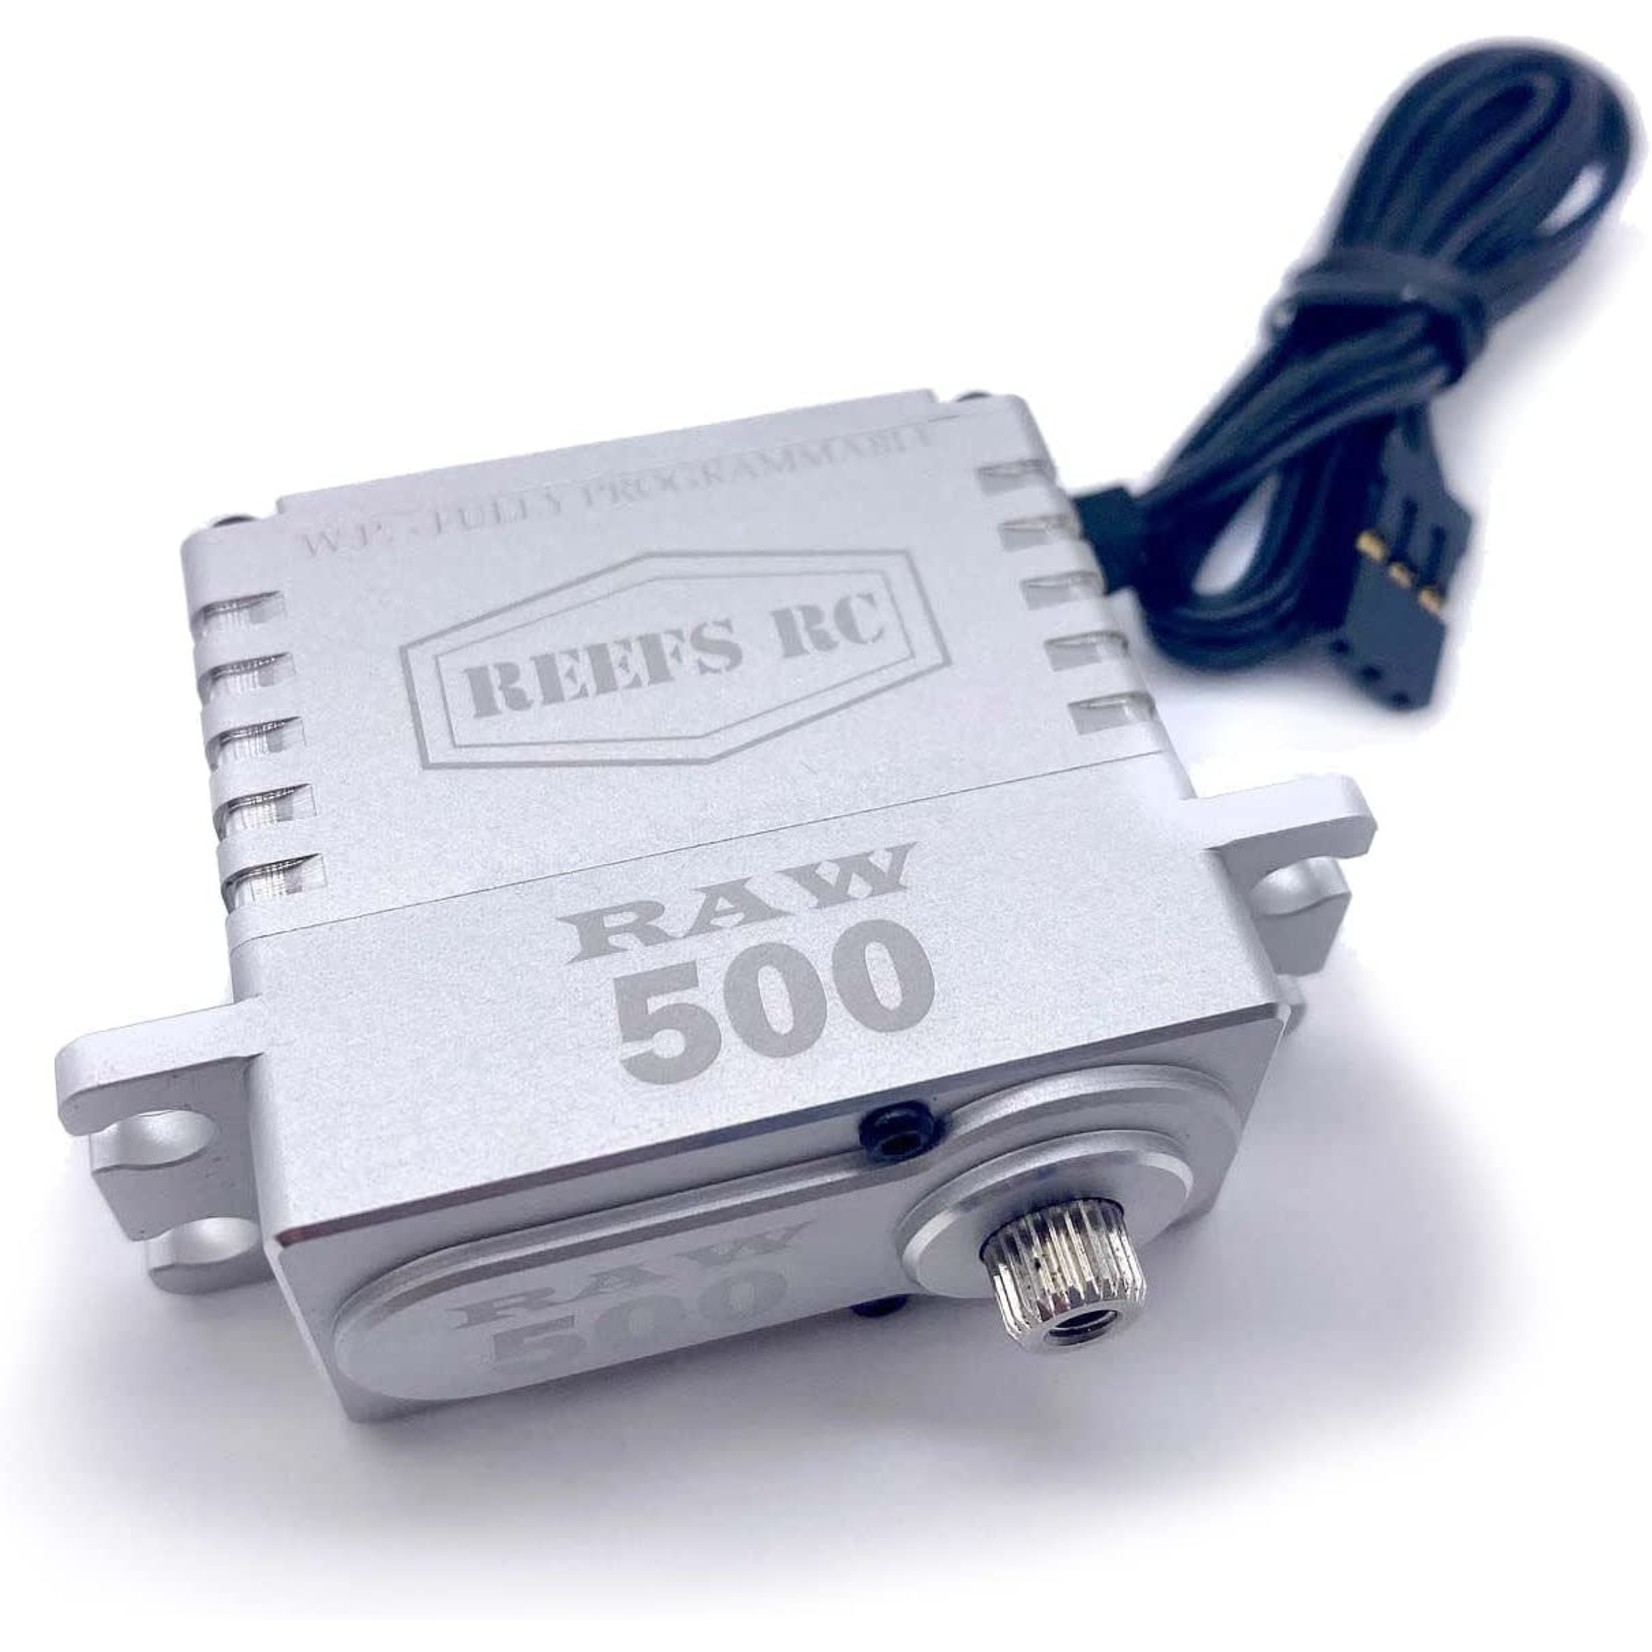 Reefs RC Reefs RC Raw 500HD High Torque/Speed Digital Servo (High Voltage) #REEFS54